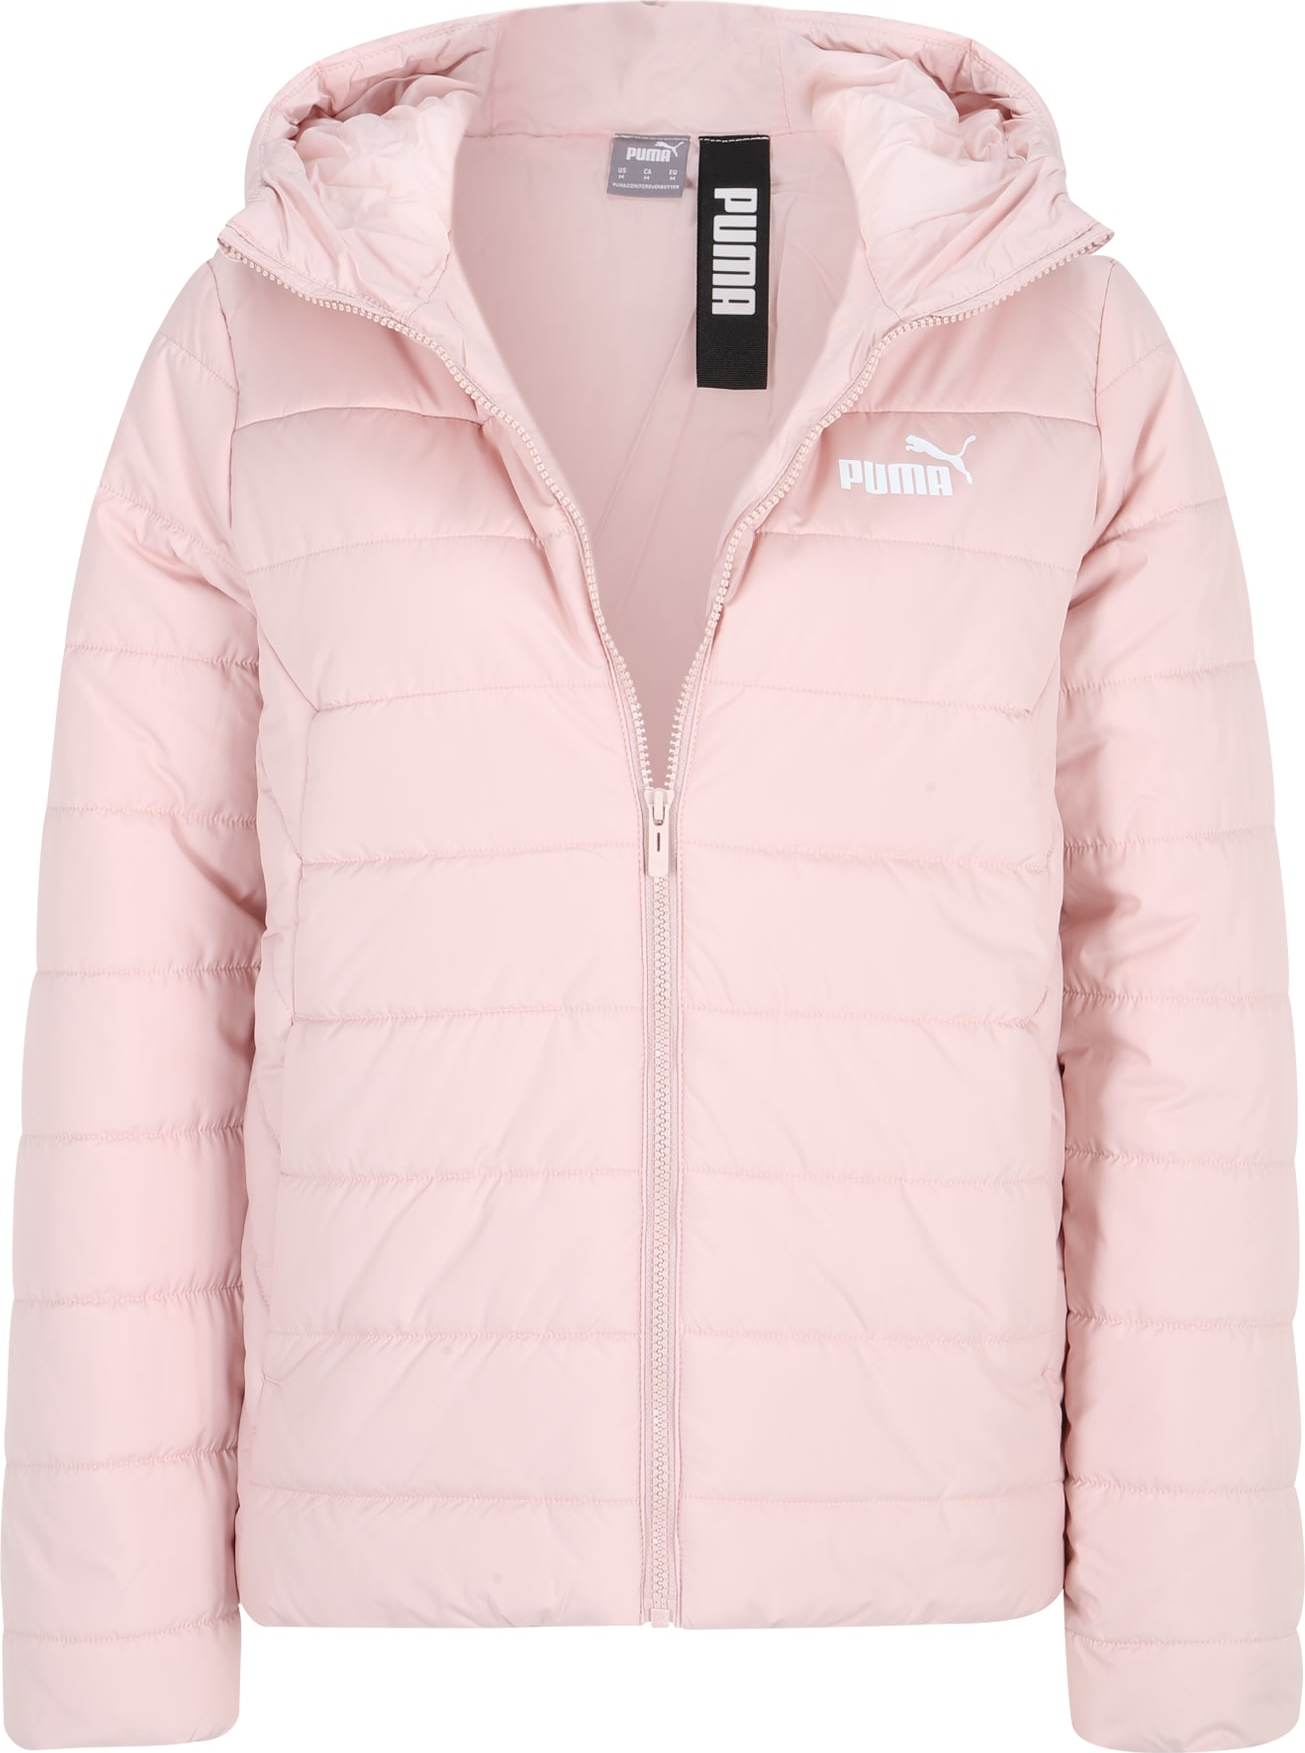 PUMA Sportovní bunda pastelově růžová / bílá